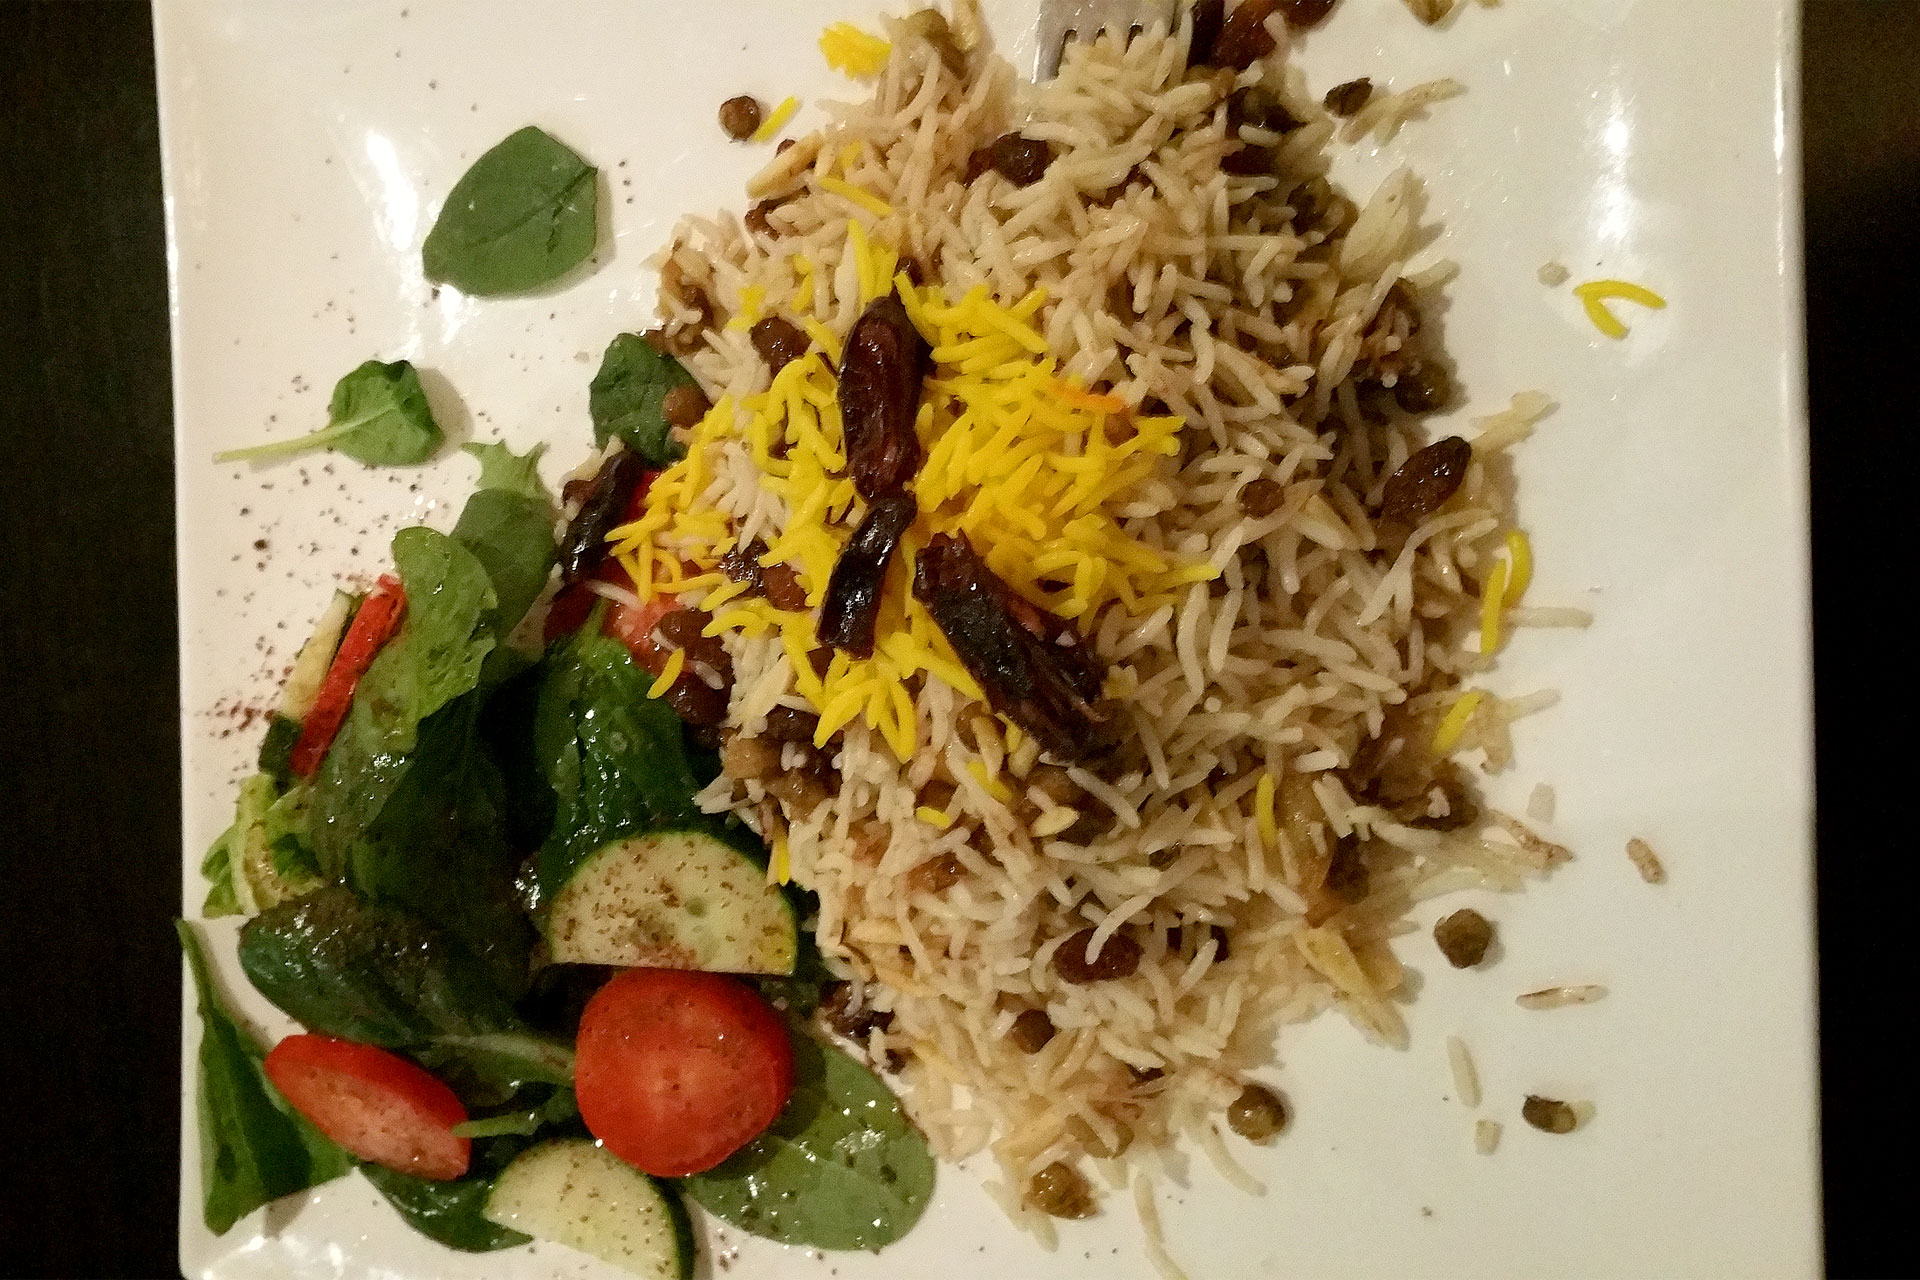 Delicious Persian food